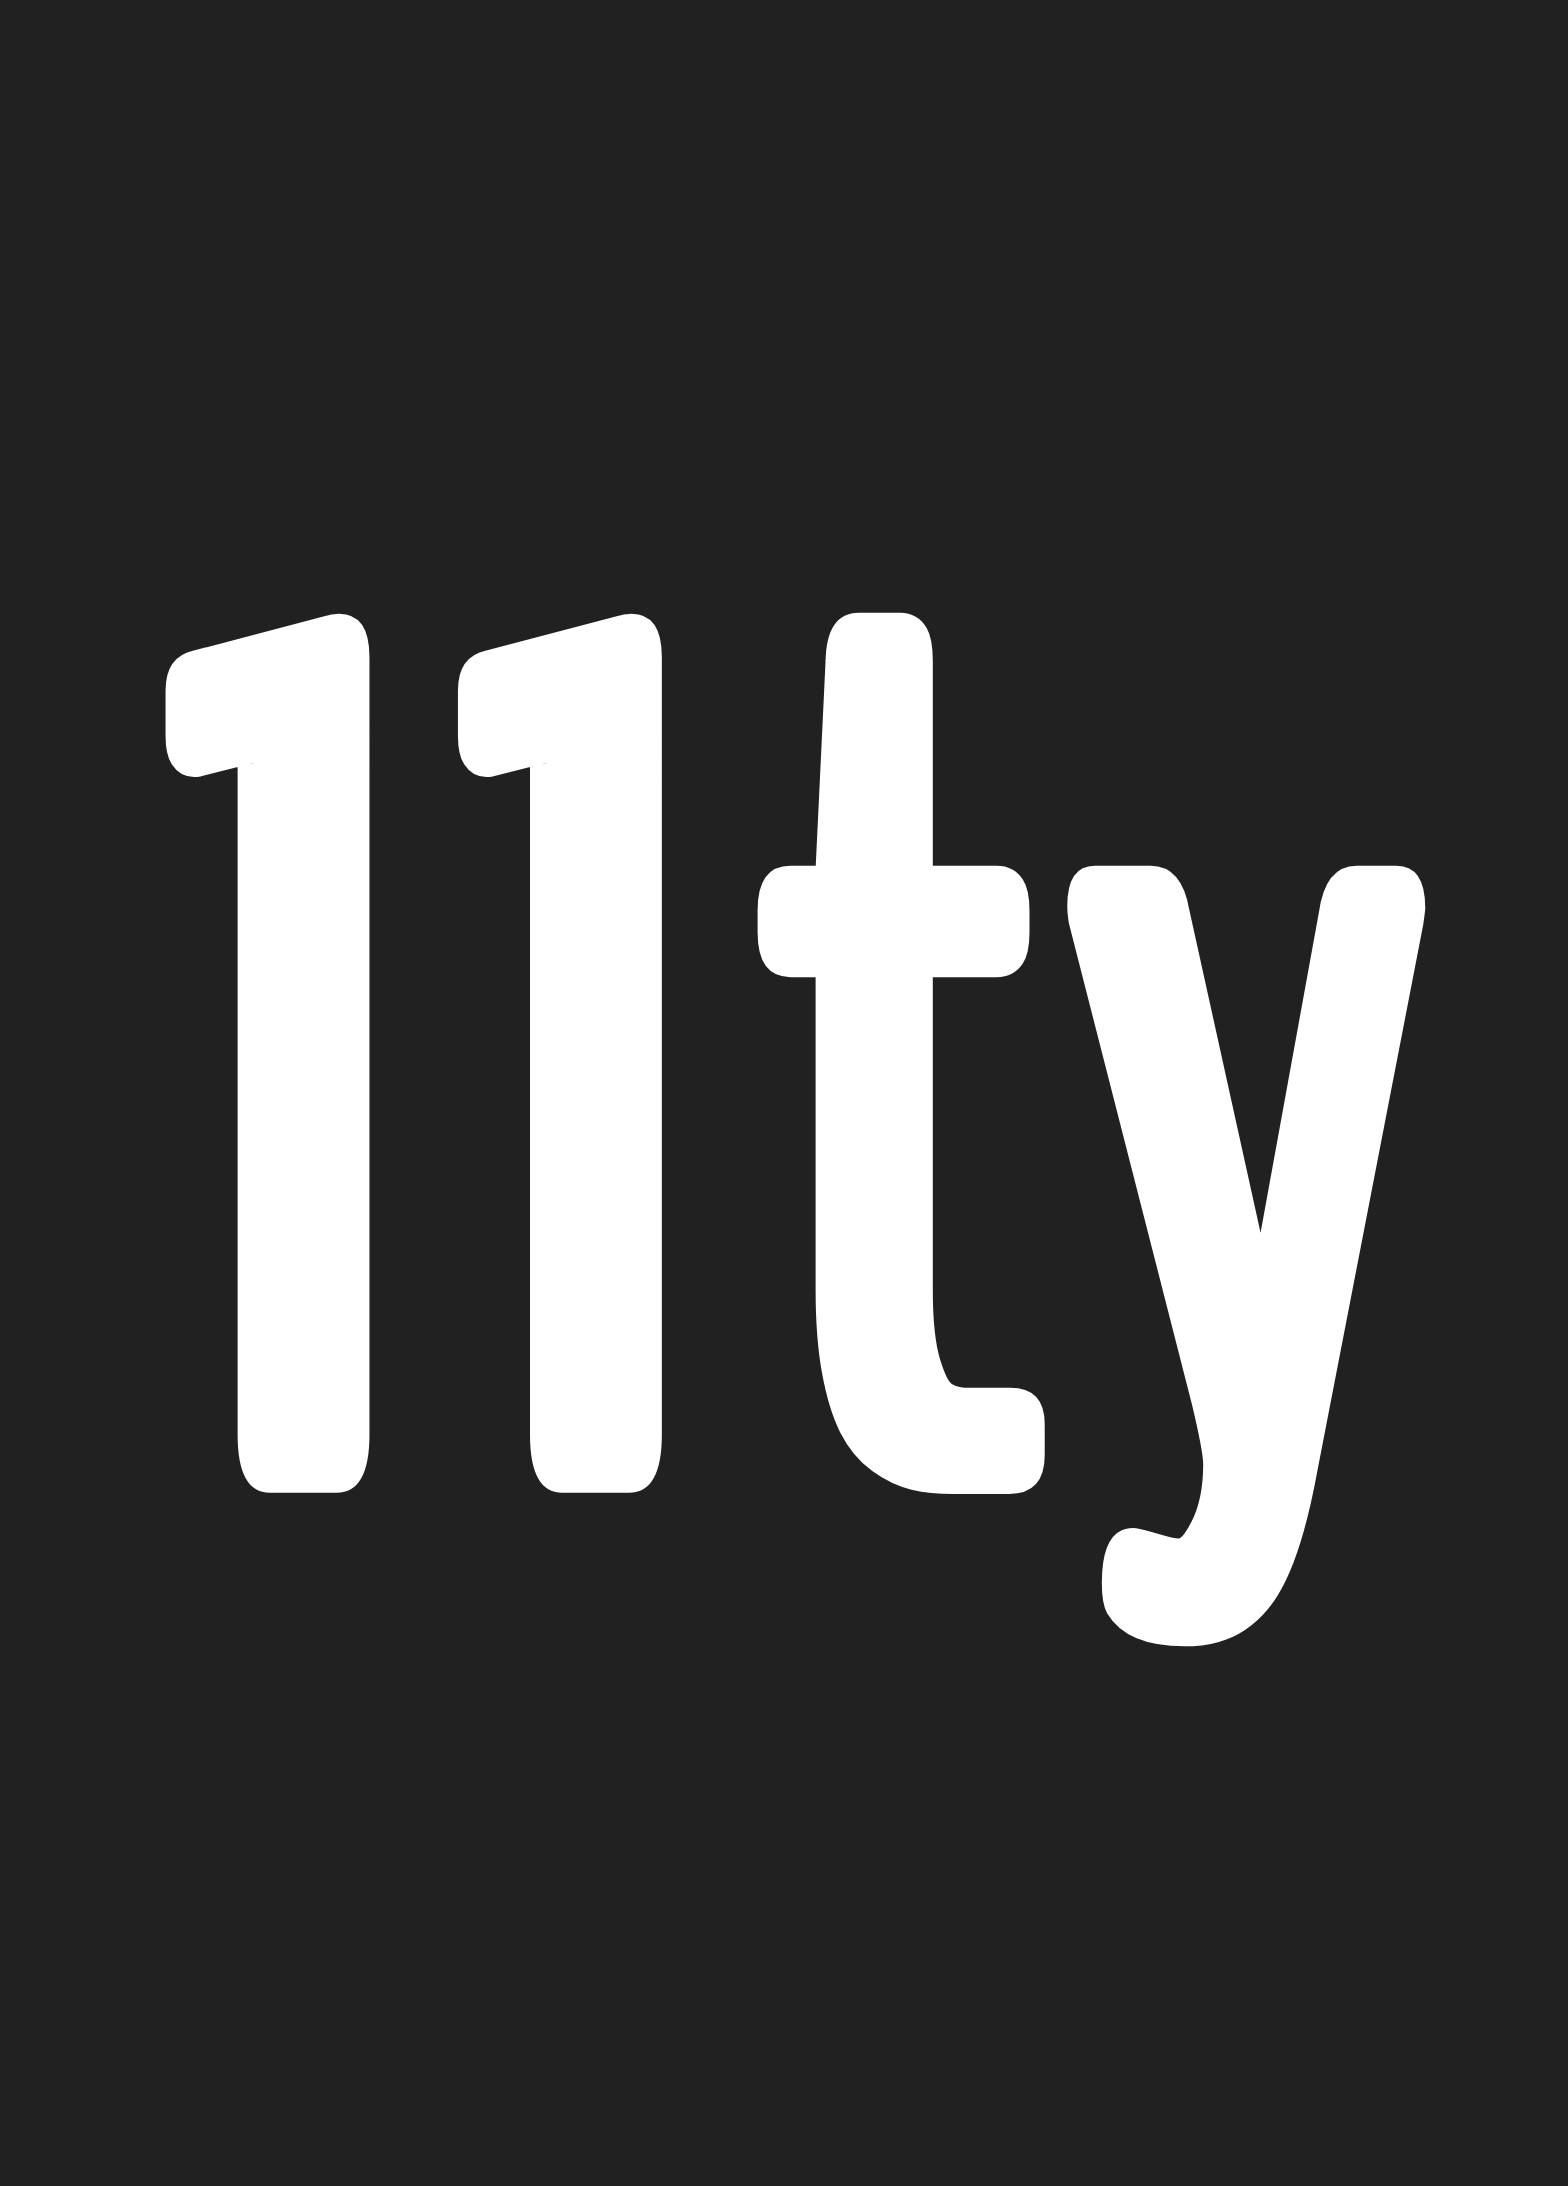 11ty Logo